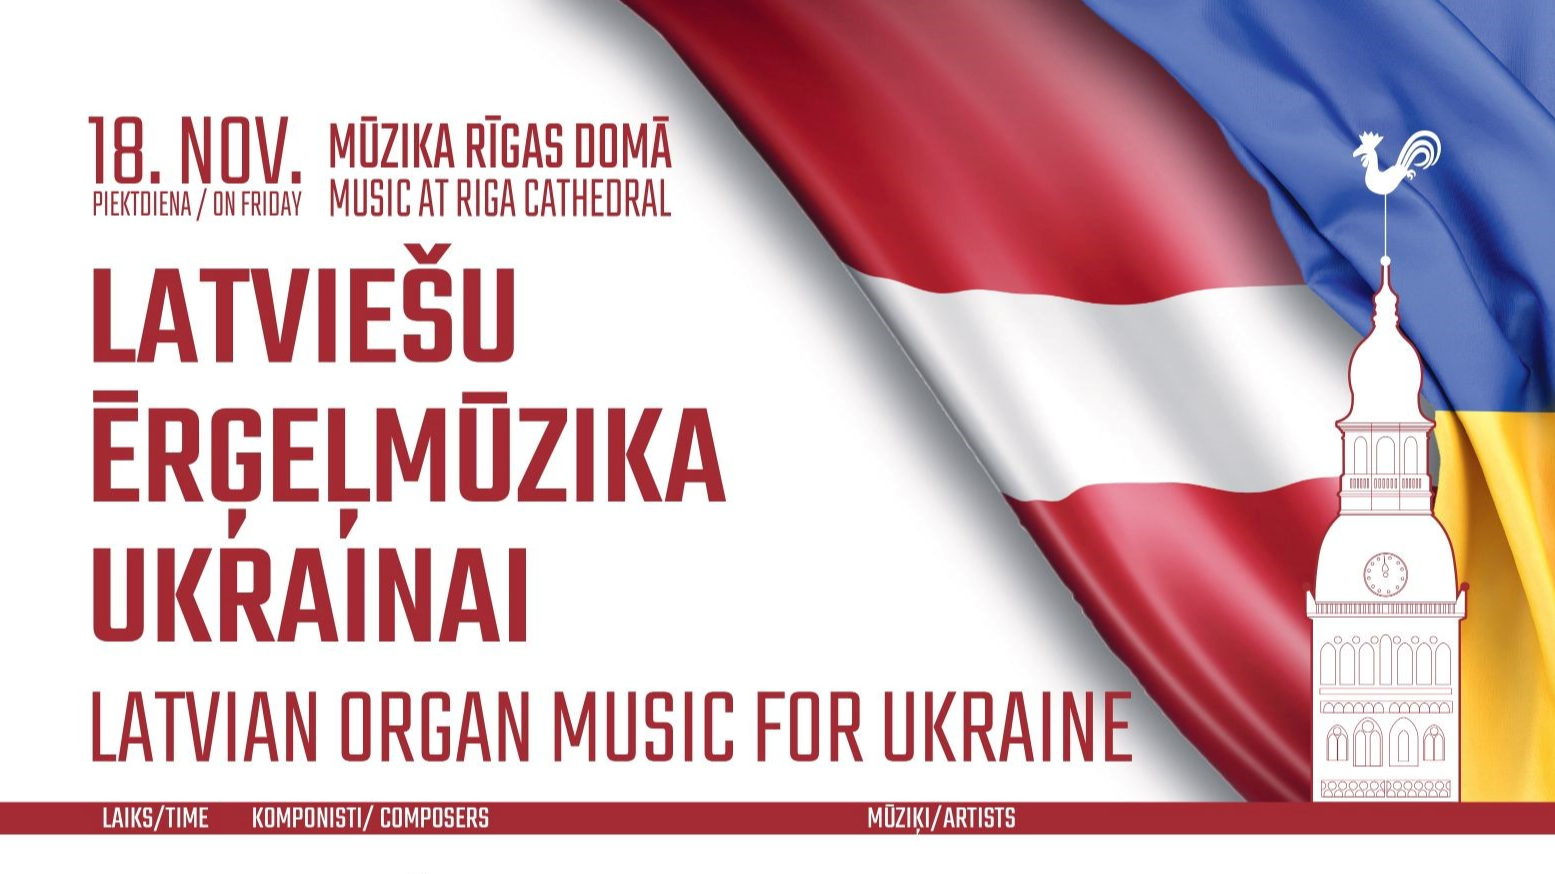 Ērģeļmūzikas maratonkoncerts kā ziedojums Ukrainas atbalstam